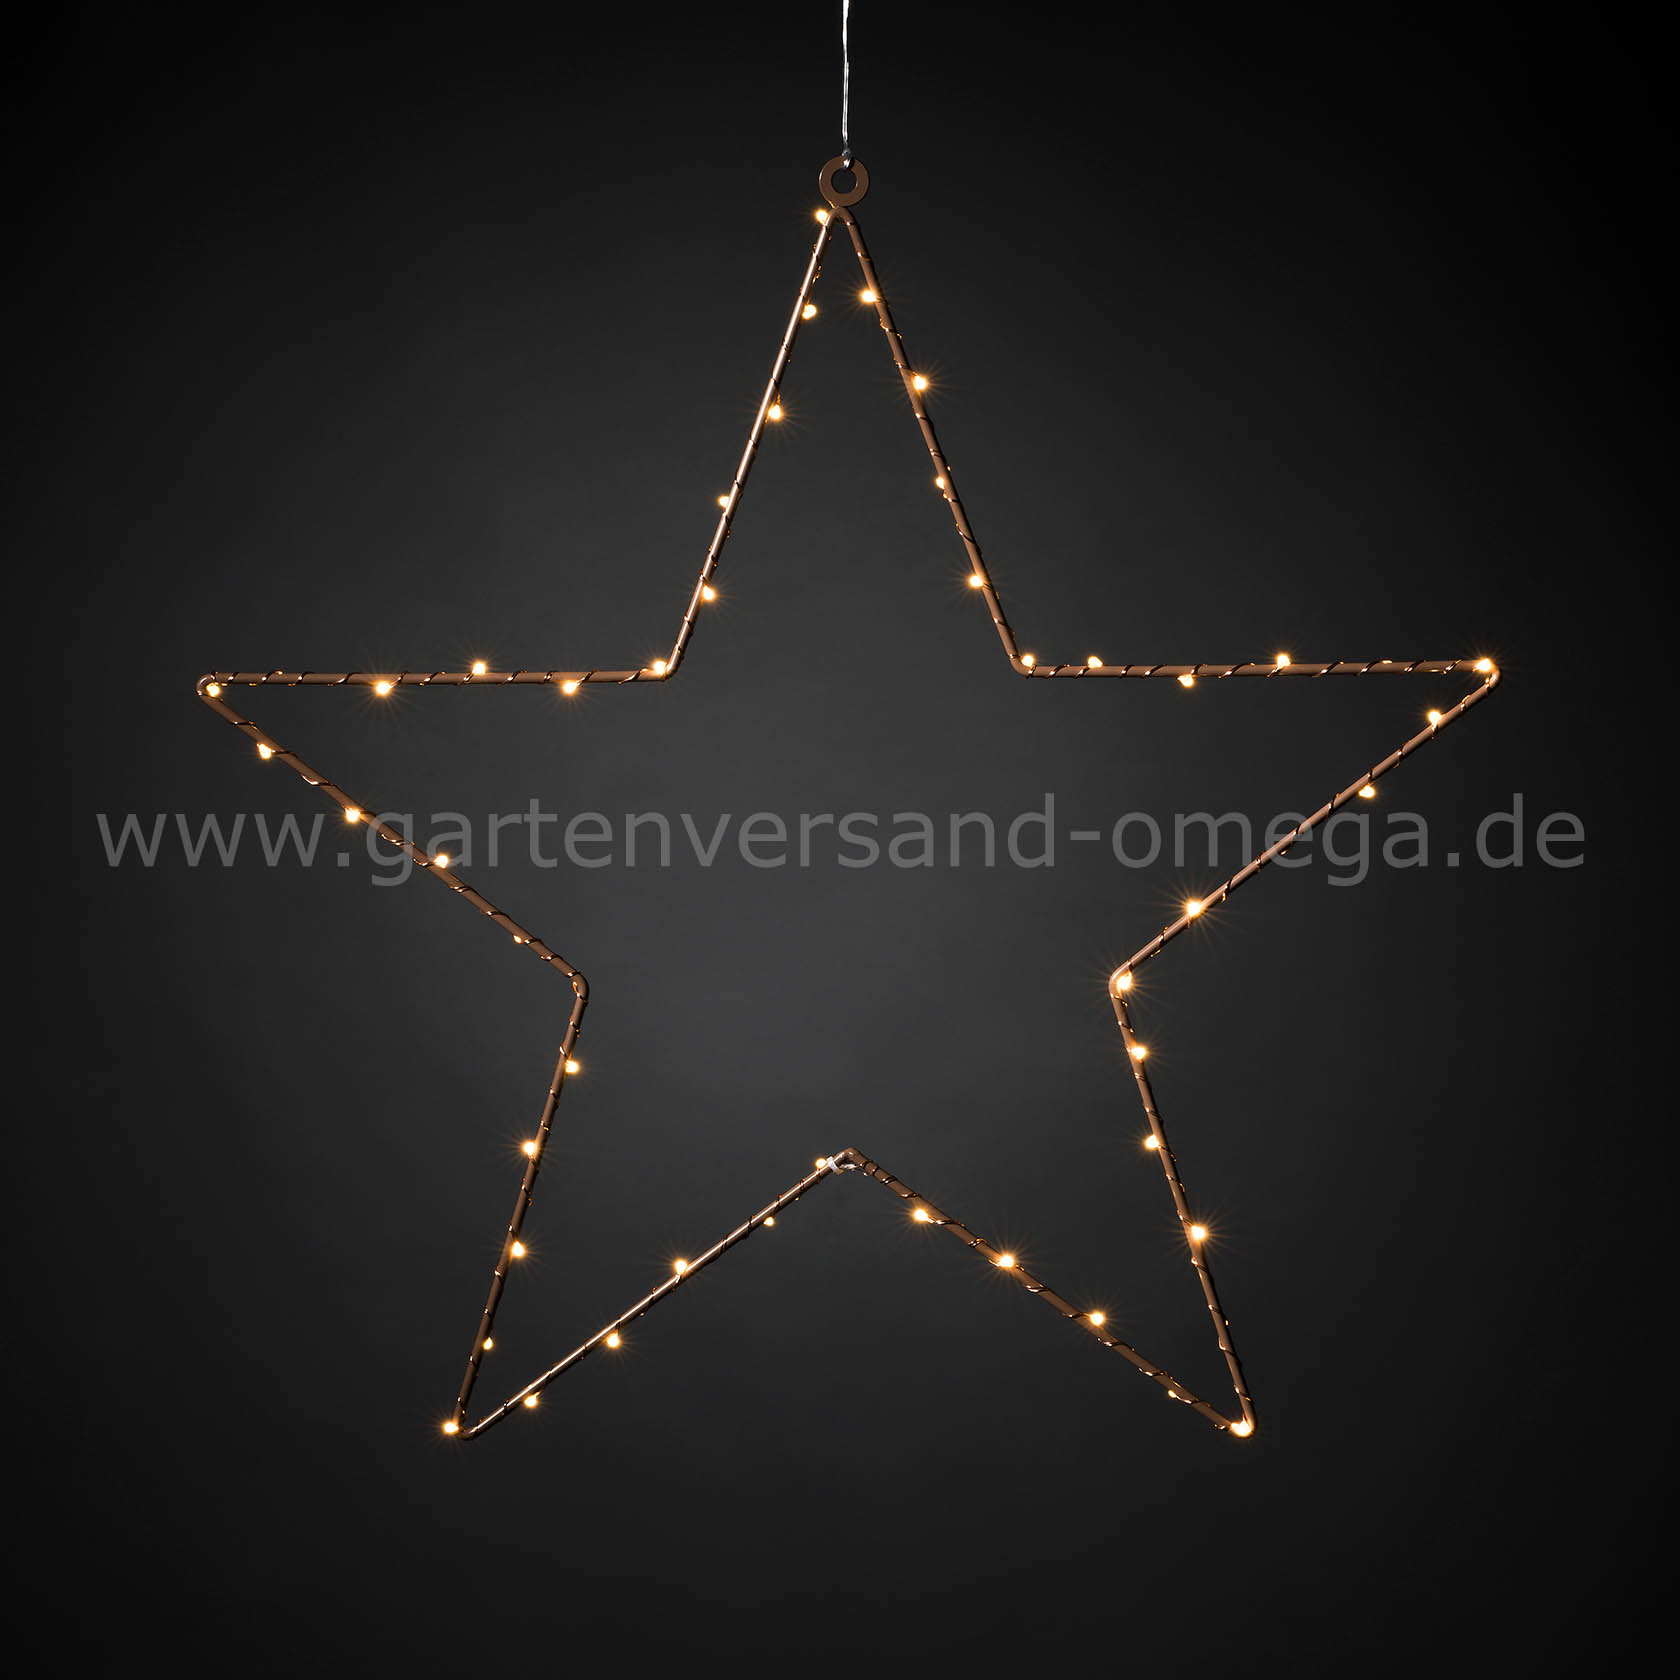 LED Metallstern hängend - Metallsilhouette Stern, Weihnachtsdeko zum  aufhängen, Weihnachtsdeko aus Metall, Weihnachtsbeleuchtung, Metallstern  mit LED, Adventsstern, Weihnachtsstern, Deko-Weihnachtsstern